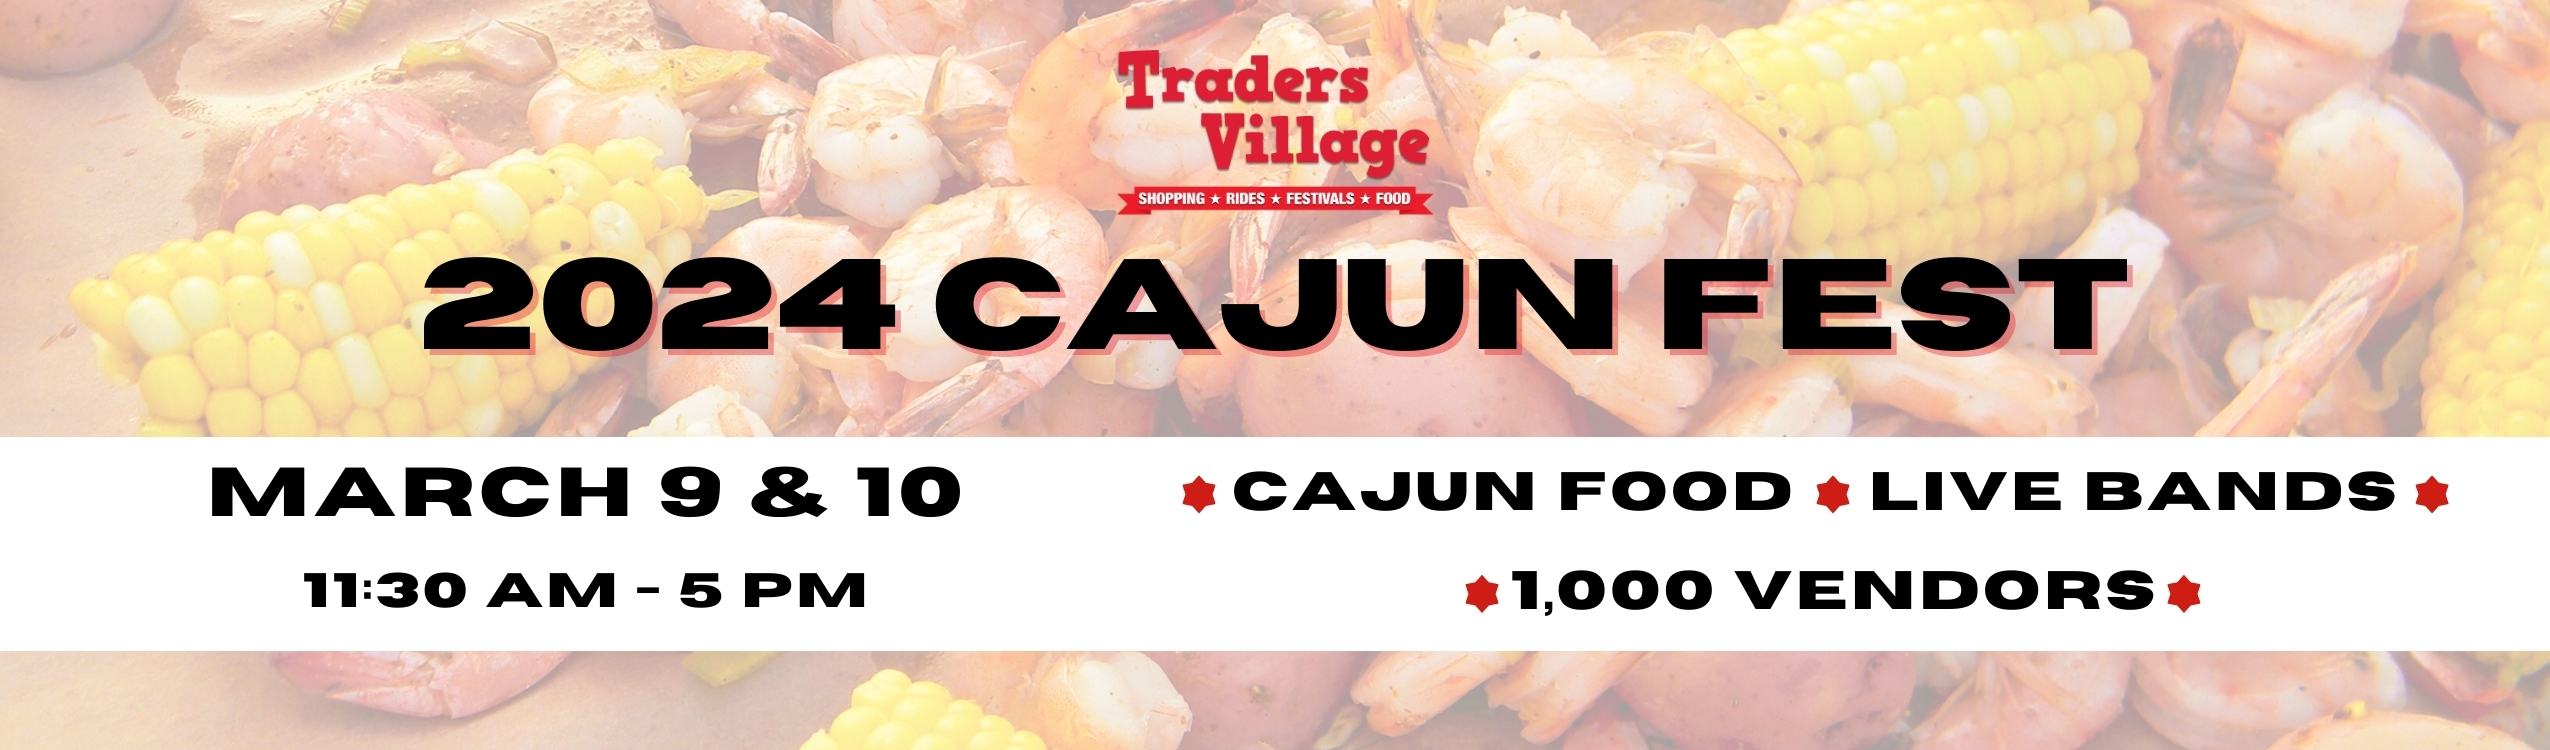 2024 Cajun Festival